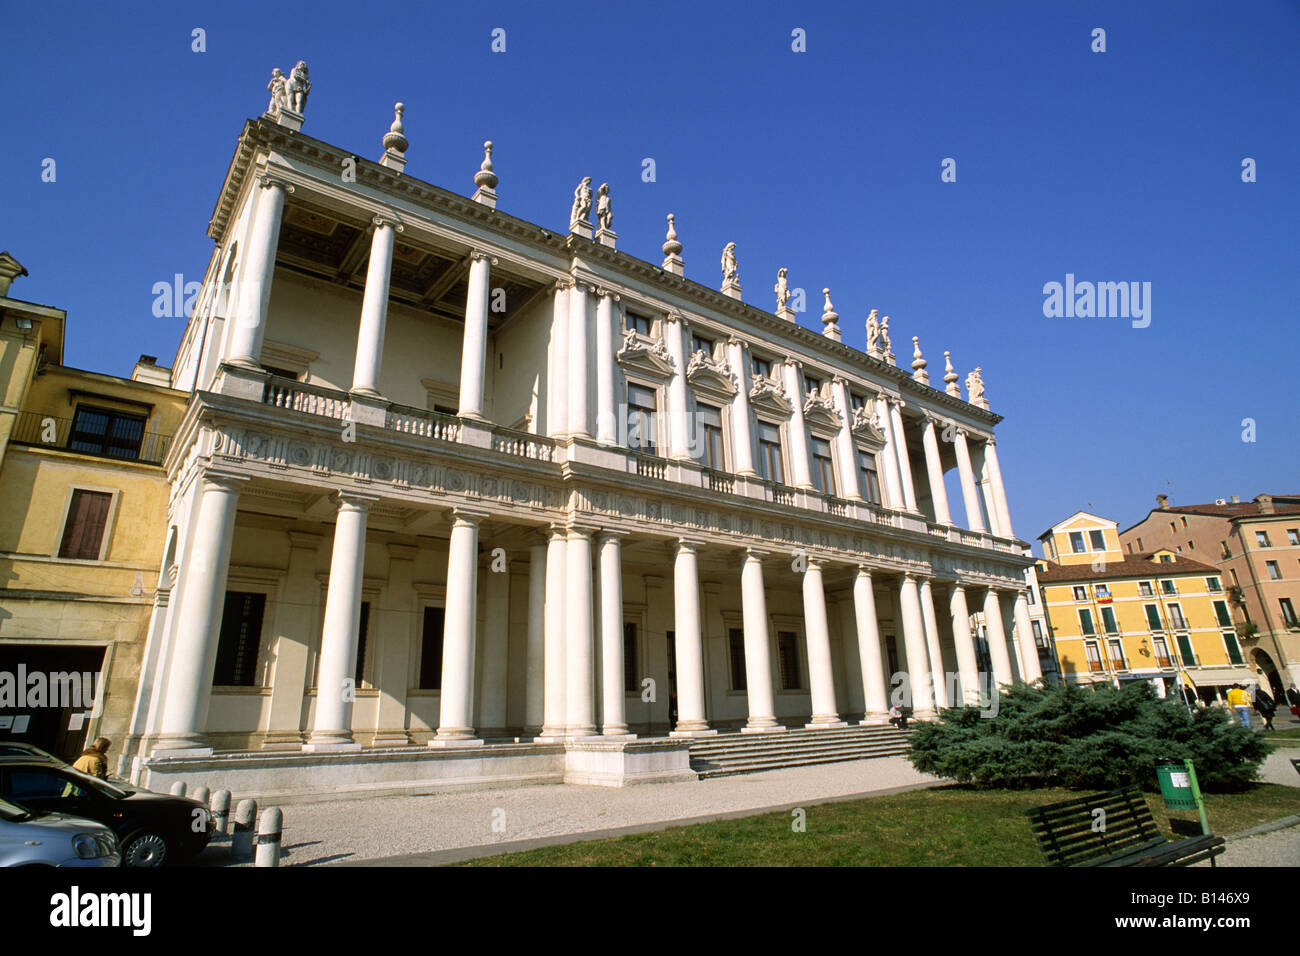 Italia, Venecia, Vicenza, el palacio Chiericati, museo de la ciudad Foto de stock